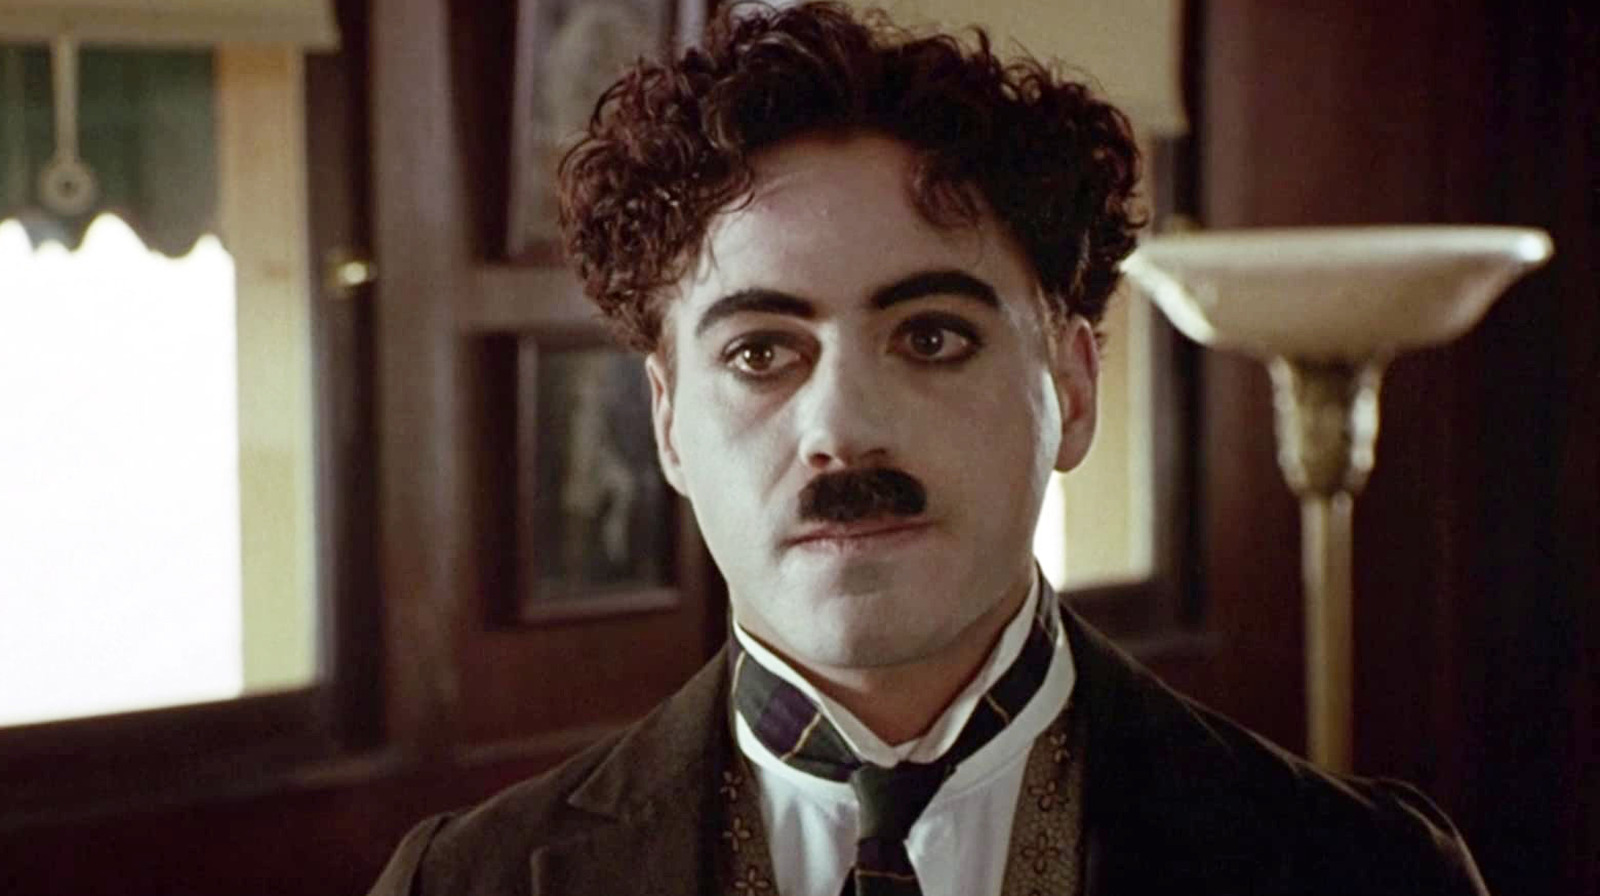 Robert Downey Jr.'s Chaplin 